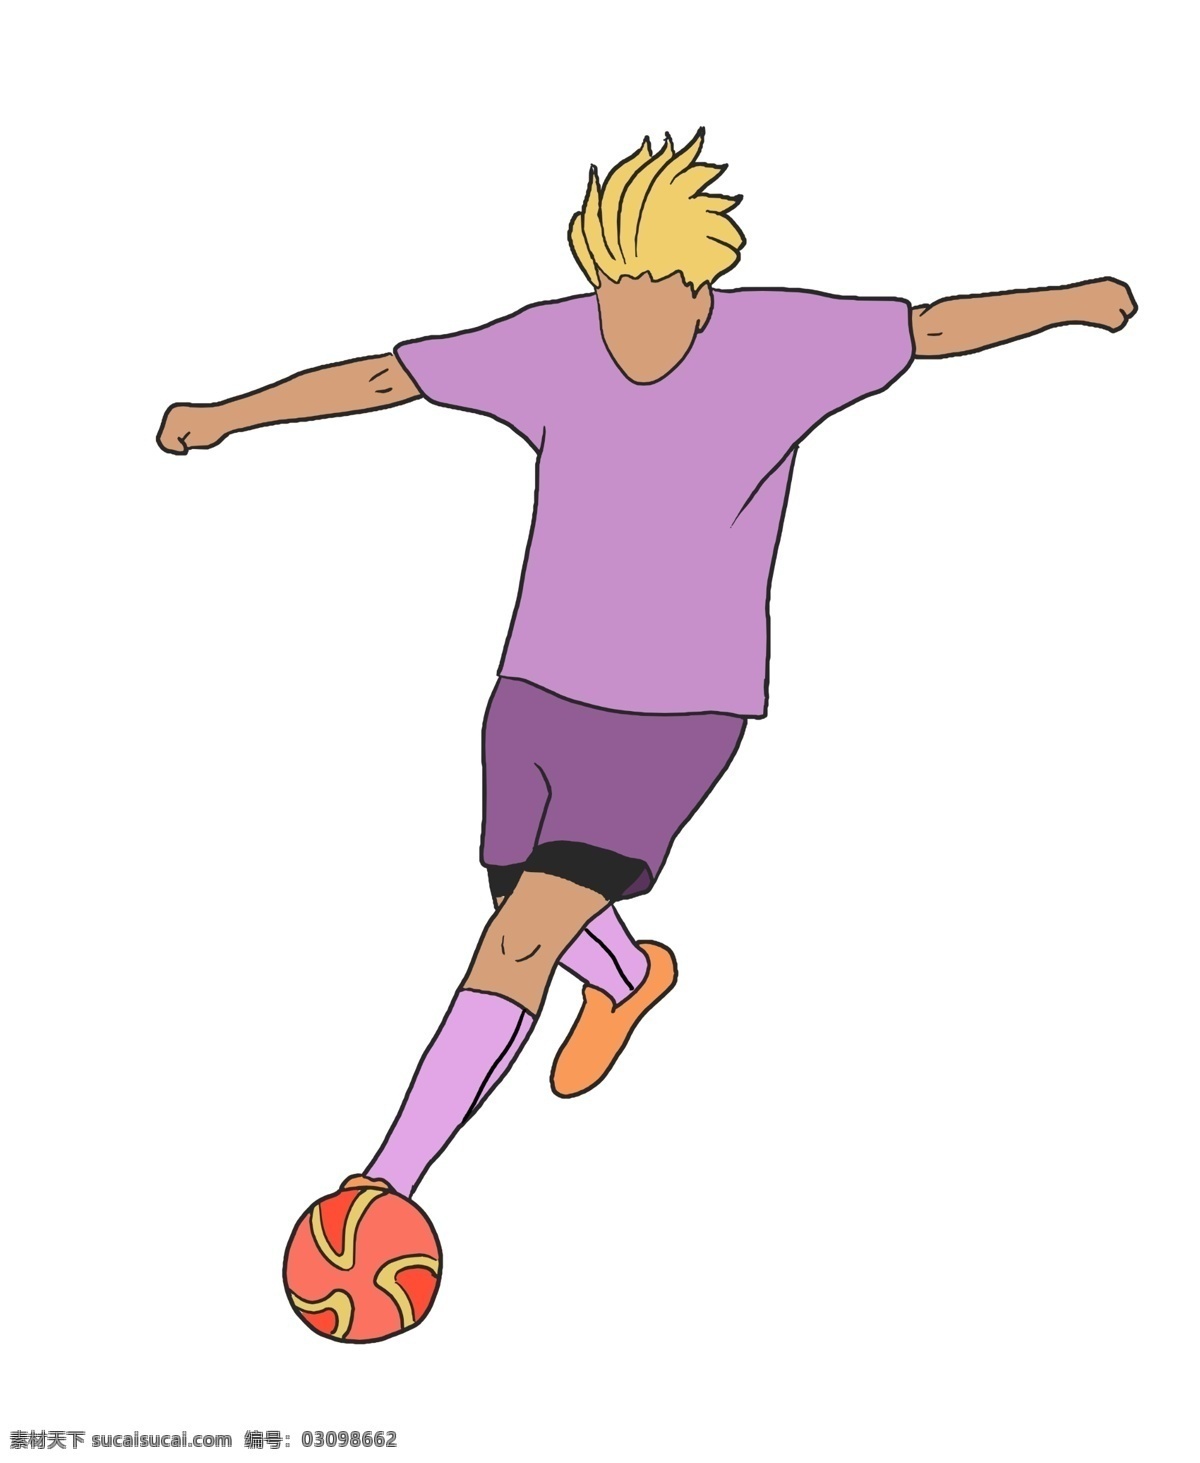 帅气 男孩 足球 帅气的小男孩 黄色的头发 圆形足球 开心的小男孩 足球健身 健身的小男孩